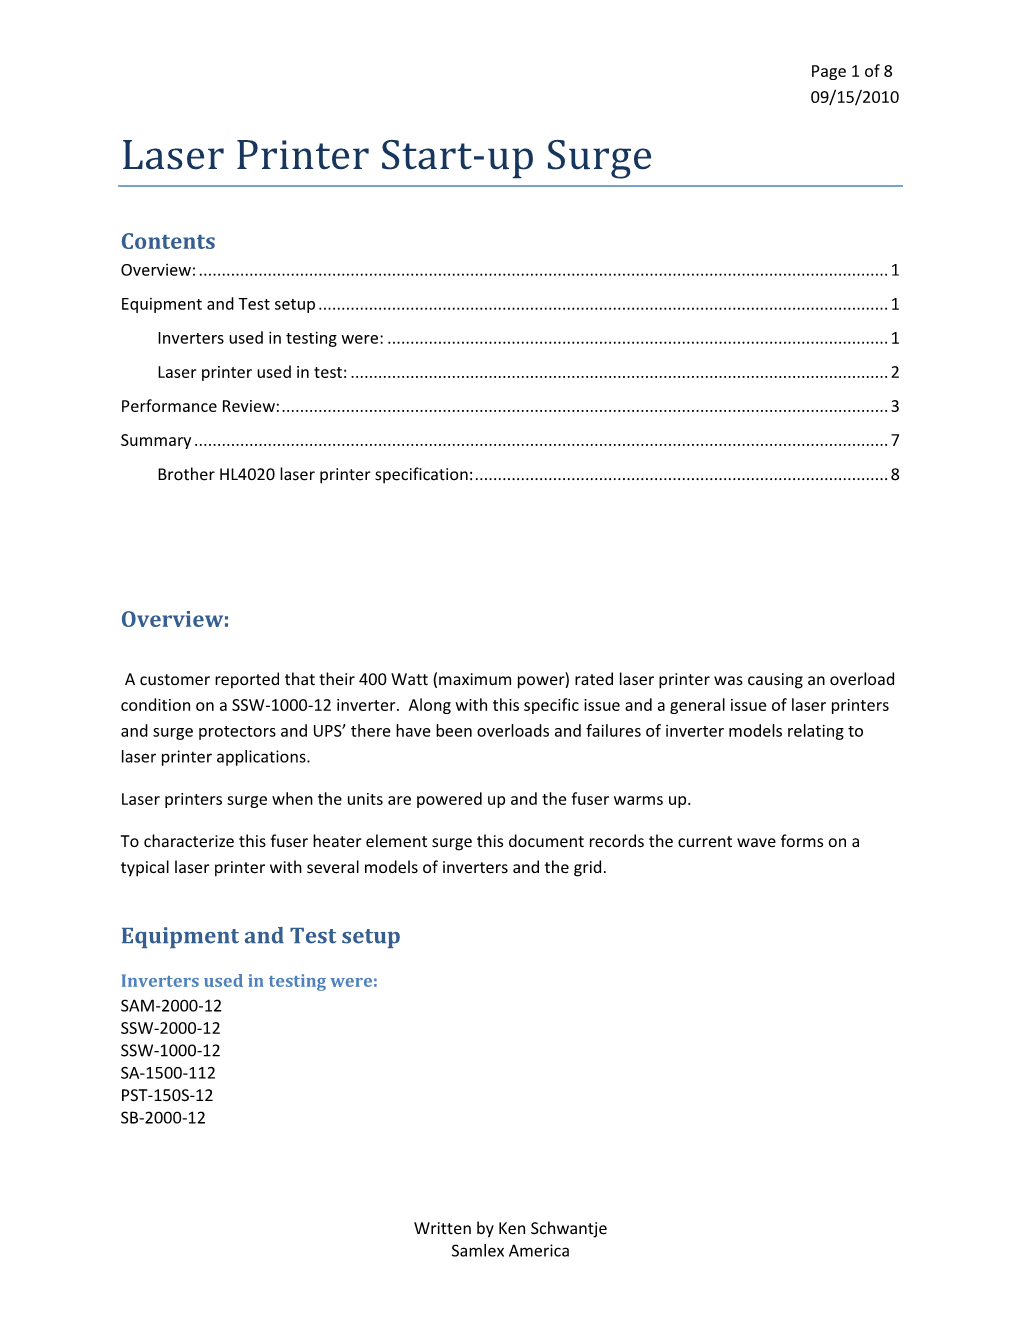 Laser Printer Start-Up Surge